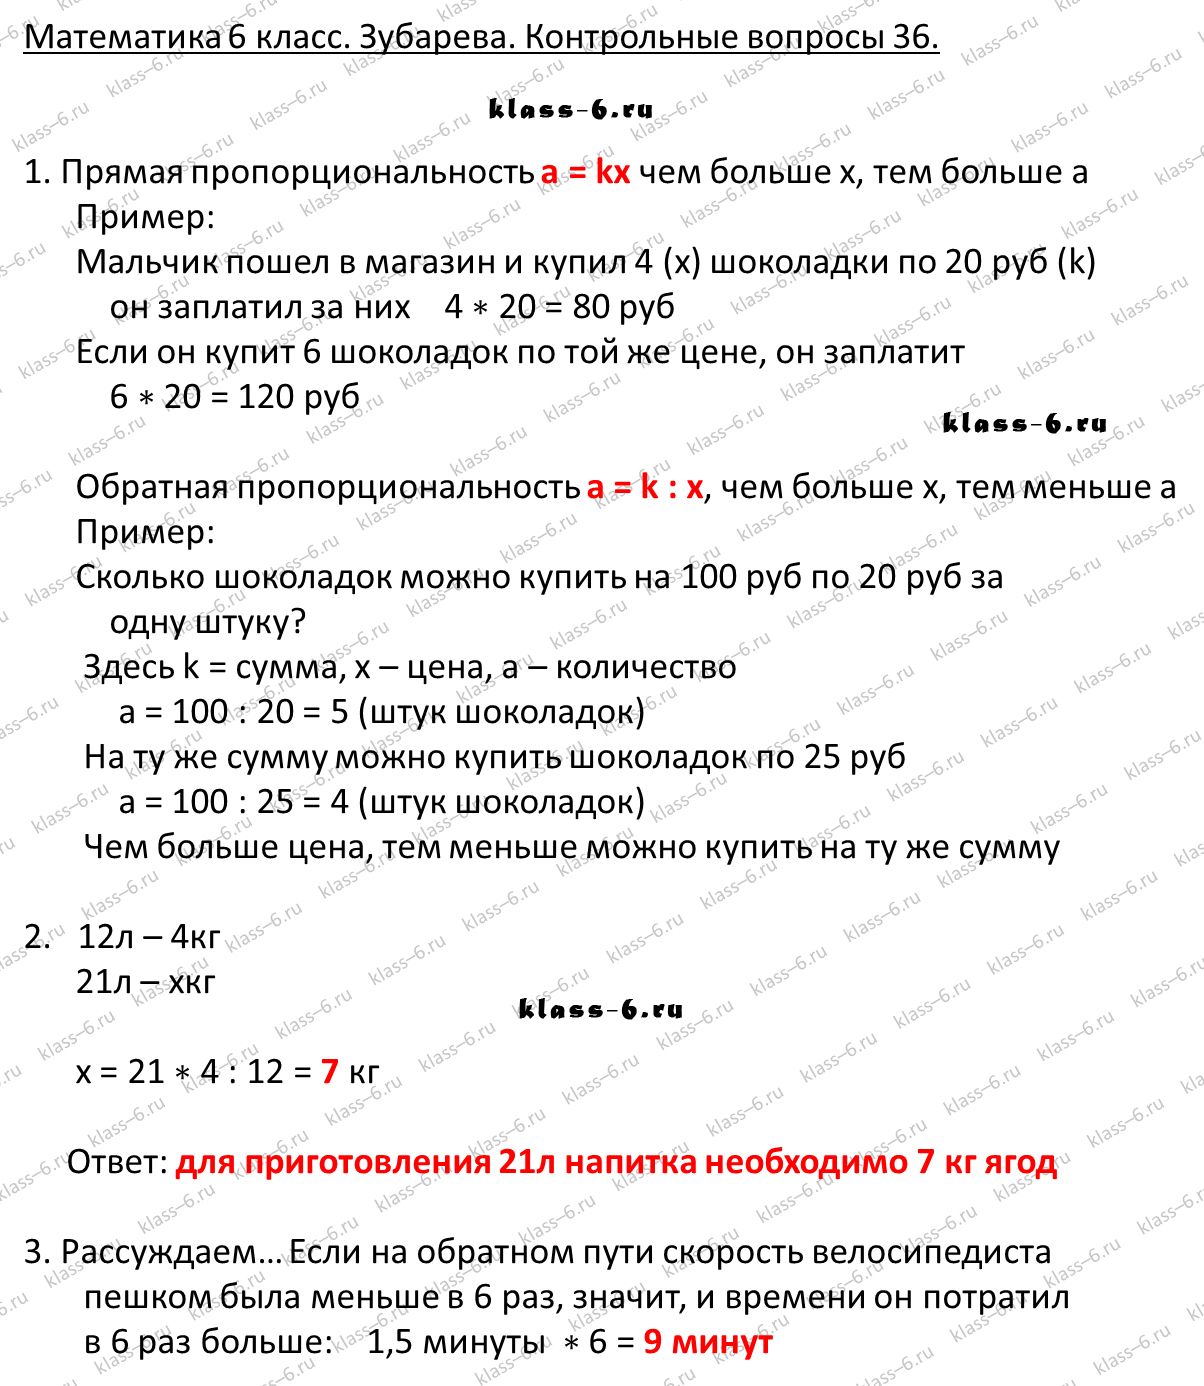 гдз математика Зубарева 6 класс ответ и подробное решение с объяснениями контрольных вопросов к параграфу № 36